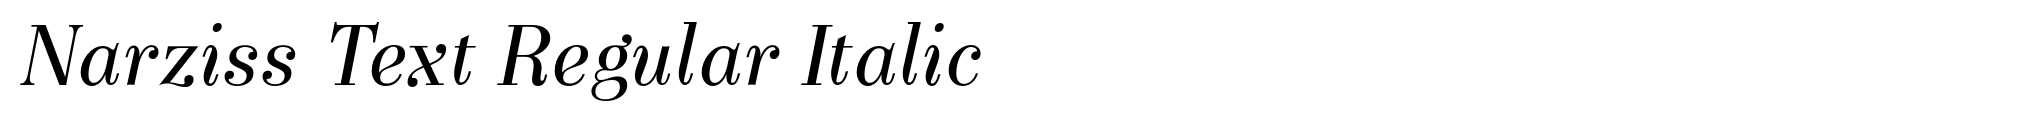 Narziss Text Regular Italic image